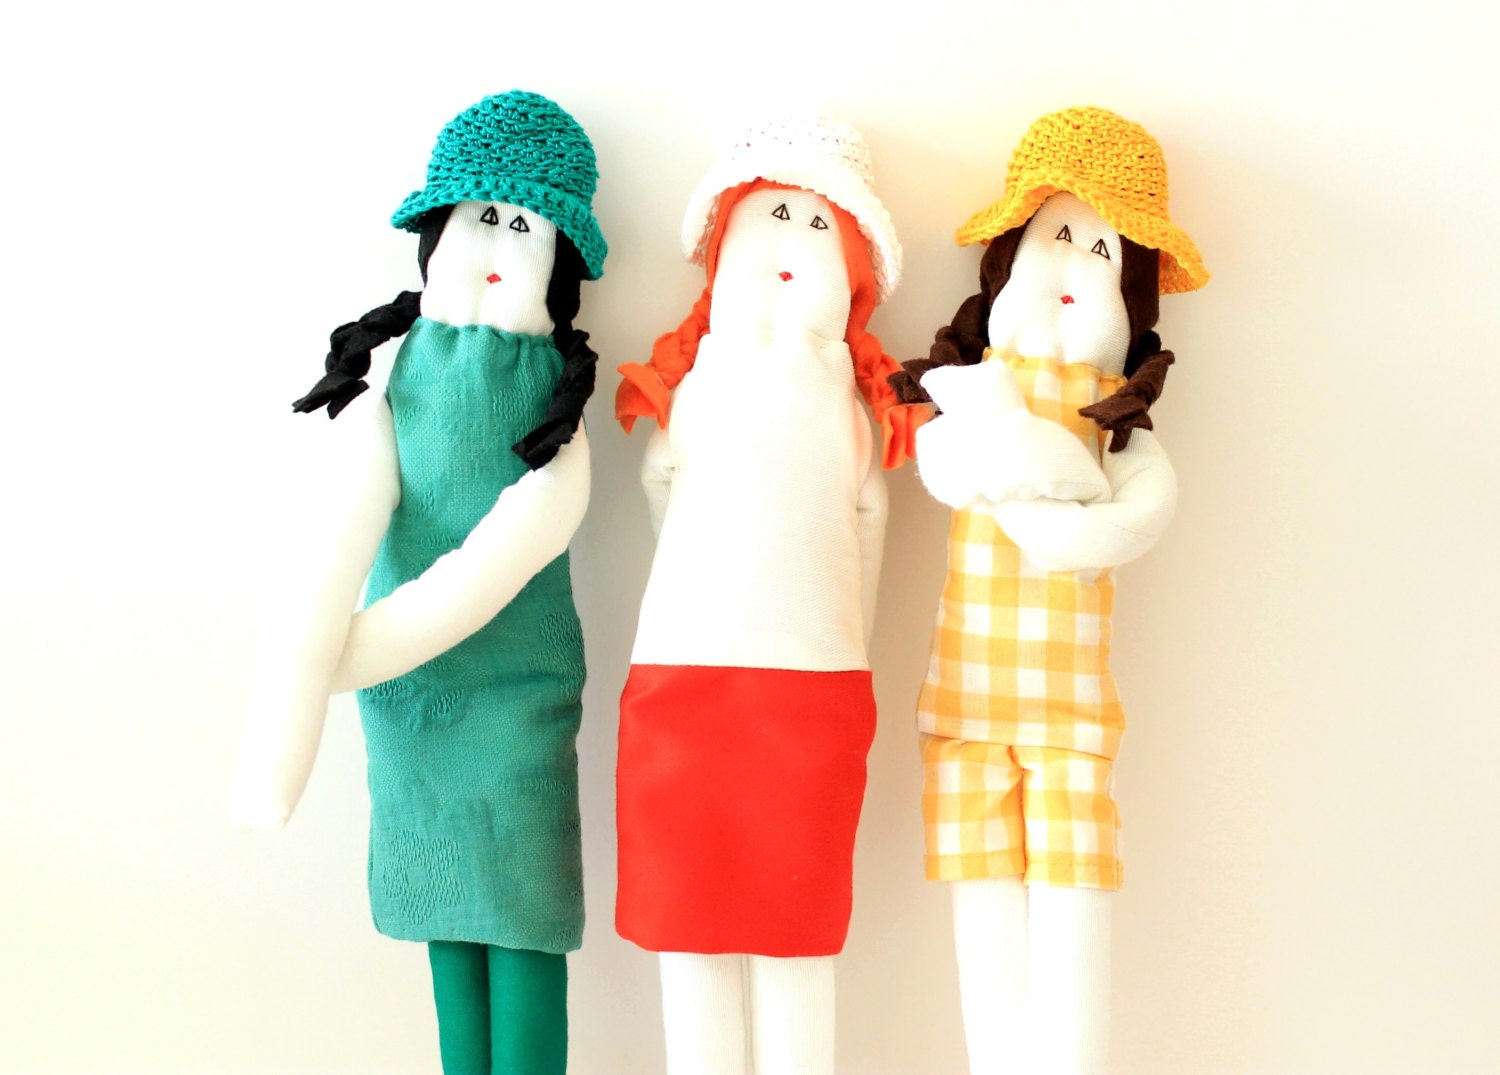 Custom ooak fabric doll Fulana Beltrana Sicrana 16'' rag doll kids soft toy MADE TO ORDER - FulBelSic